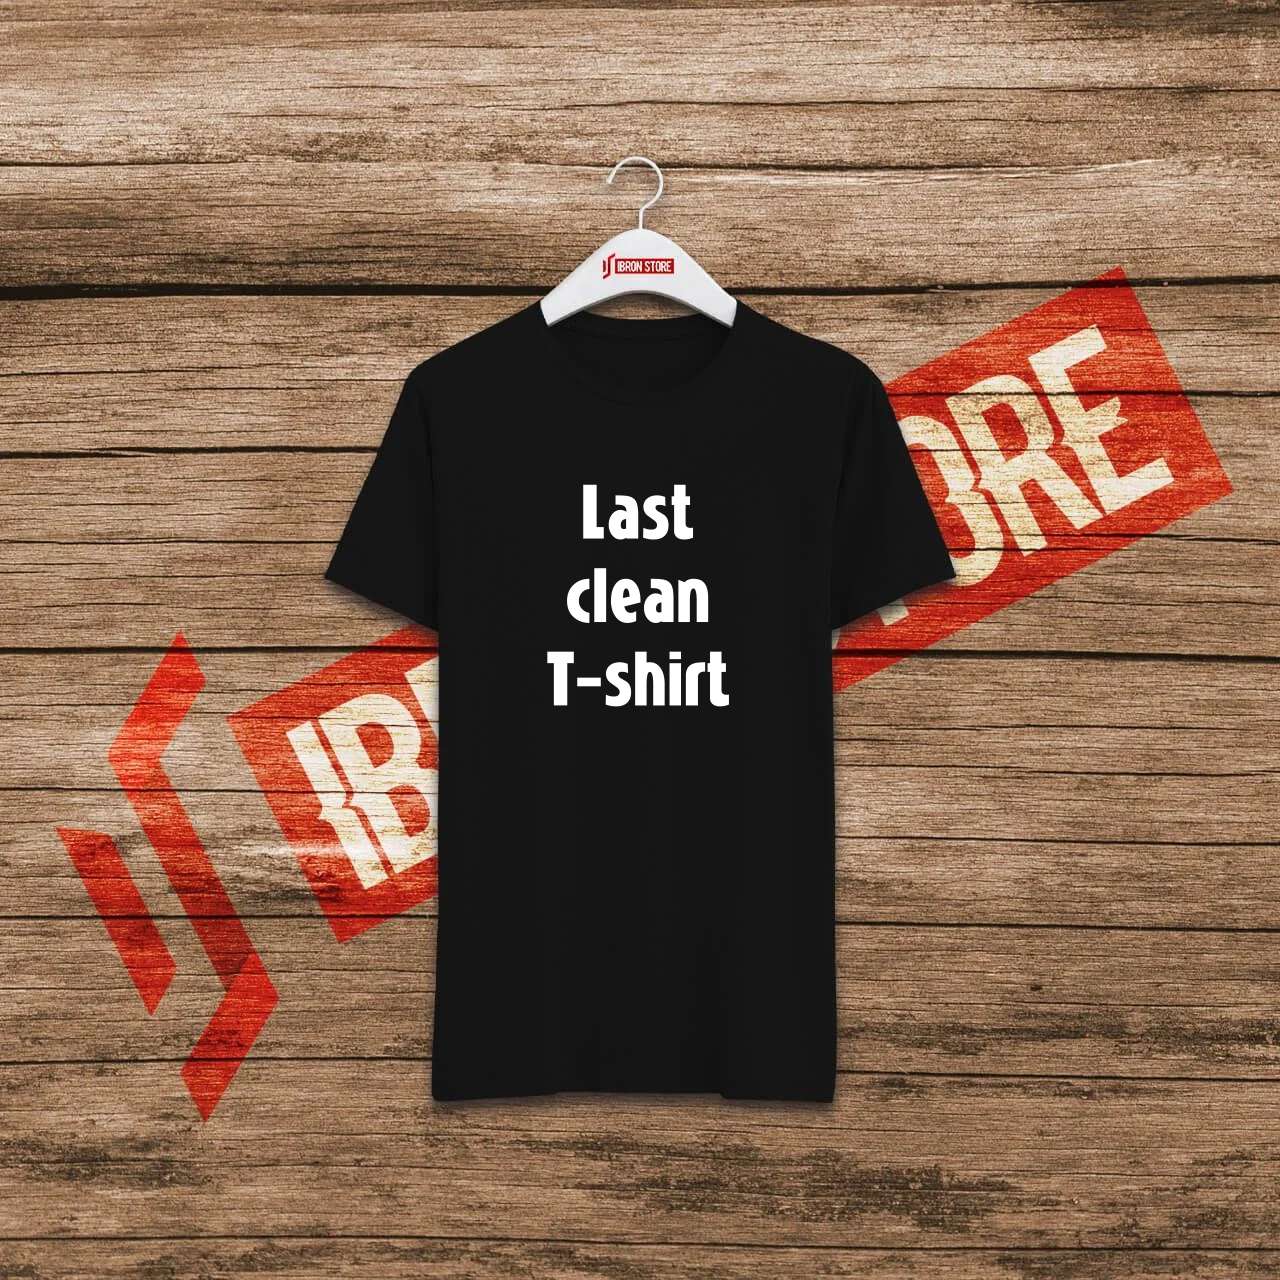 Last clean T-shirt mintás unisex póló (fekete)